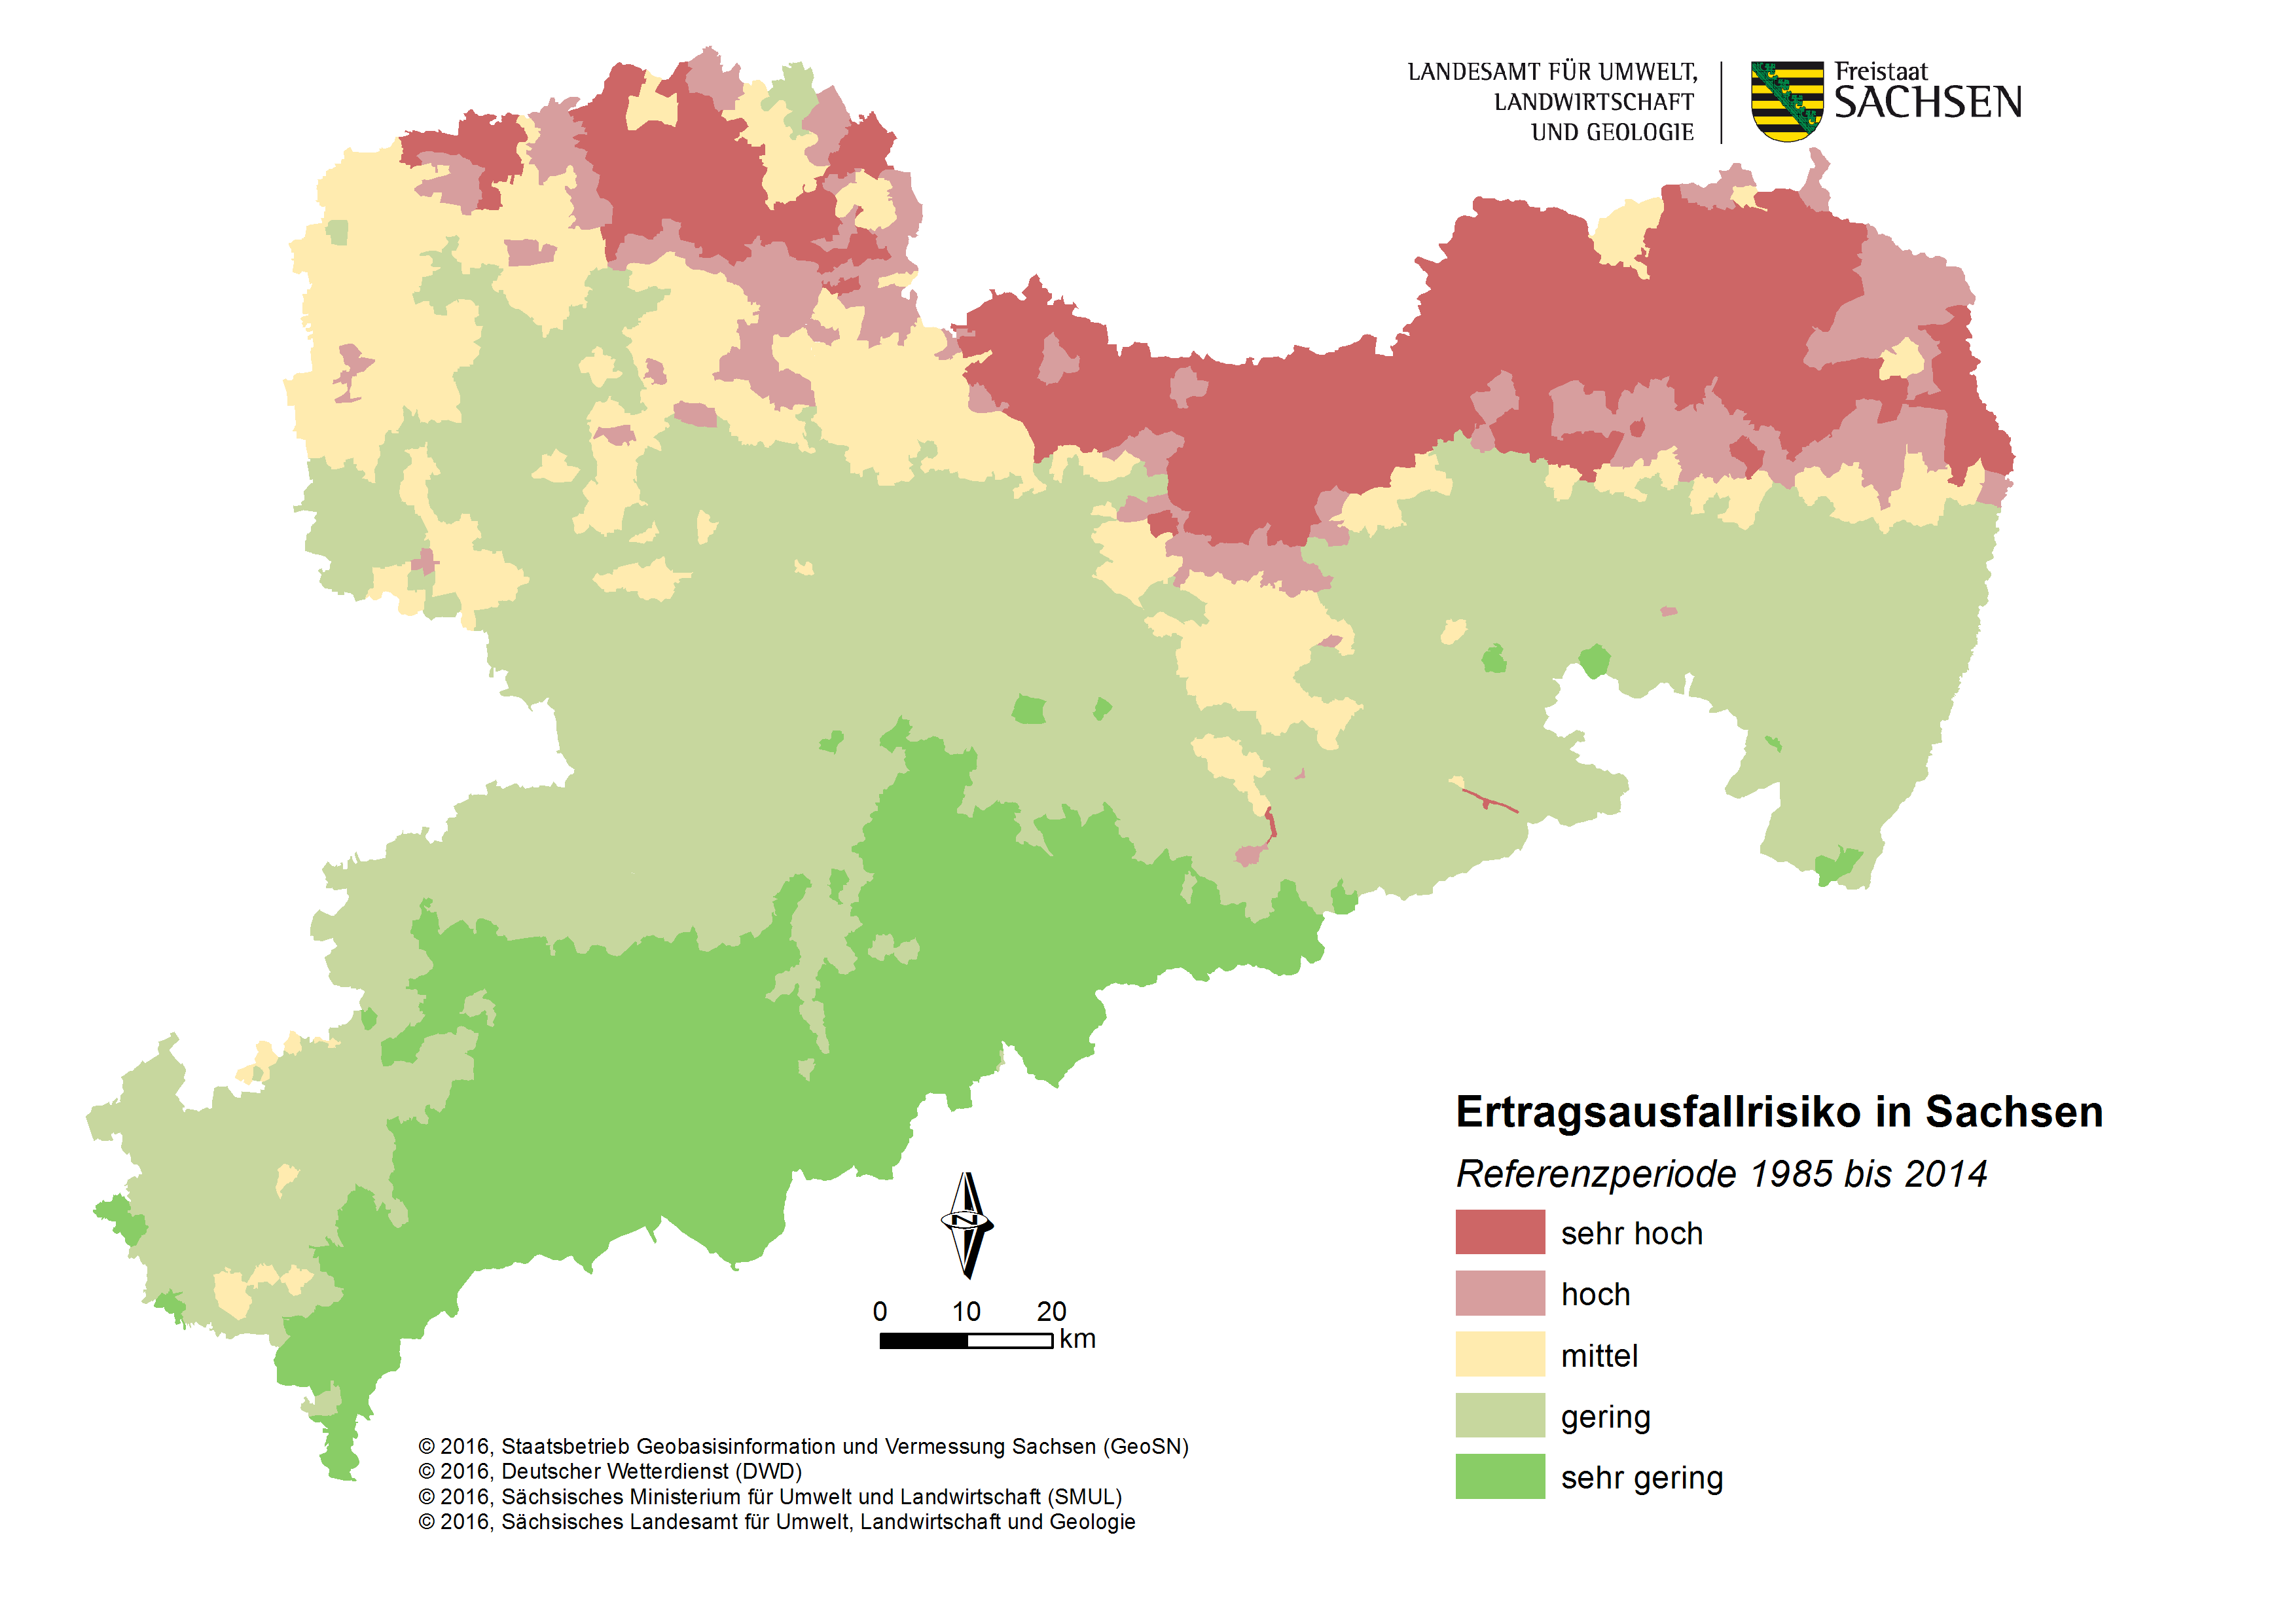 Die Karte zeigt das aktuelle Risiko für Ertragsausfall in der landwirtschaftlichen Produktion in Sachsen. Die Risiken sind im Norden sehr hoch und hoch. Nach Süden sinkt das Risiko über das Lössgebiet bis ins Erzgebirge immer weiter ab.